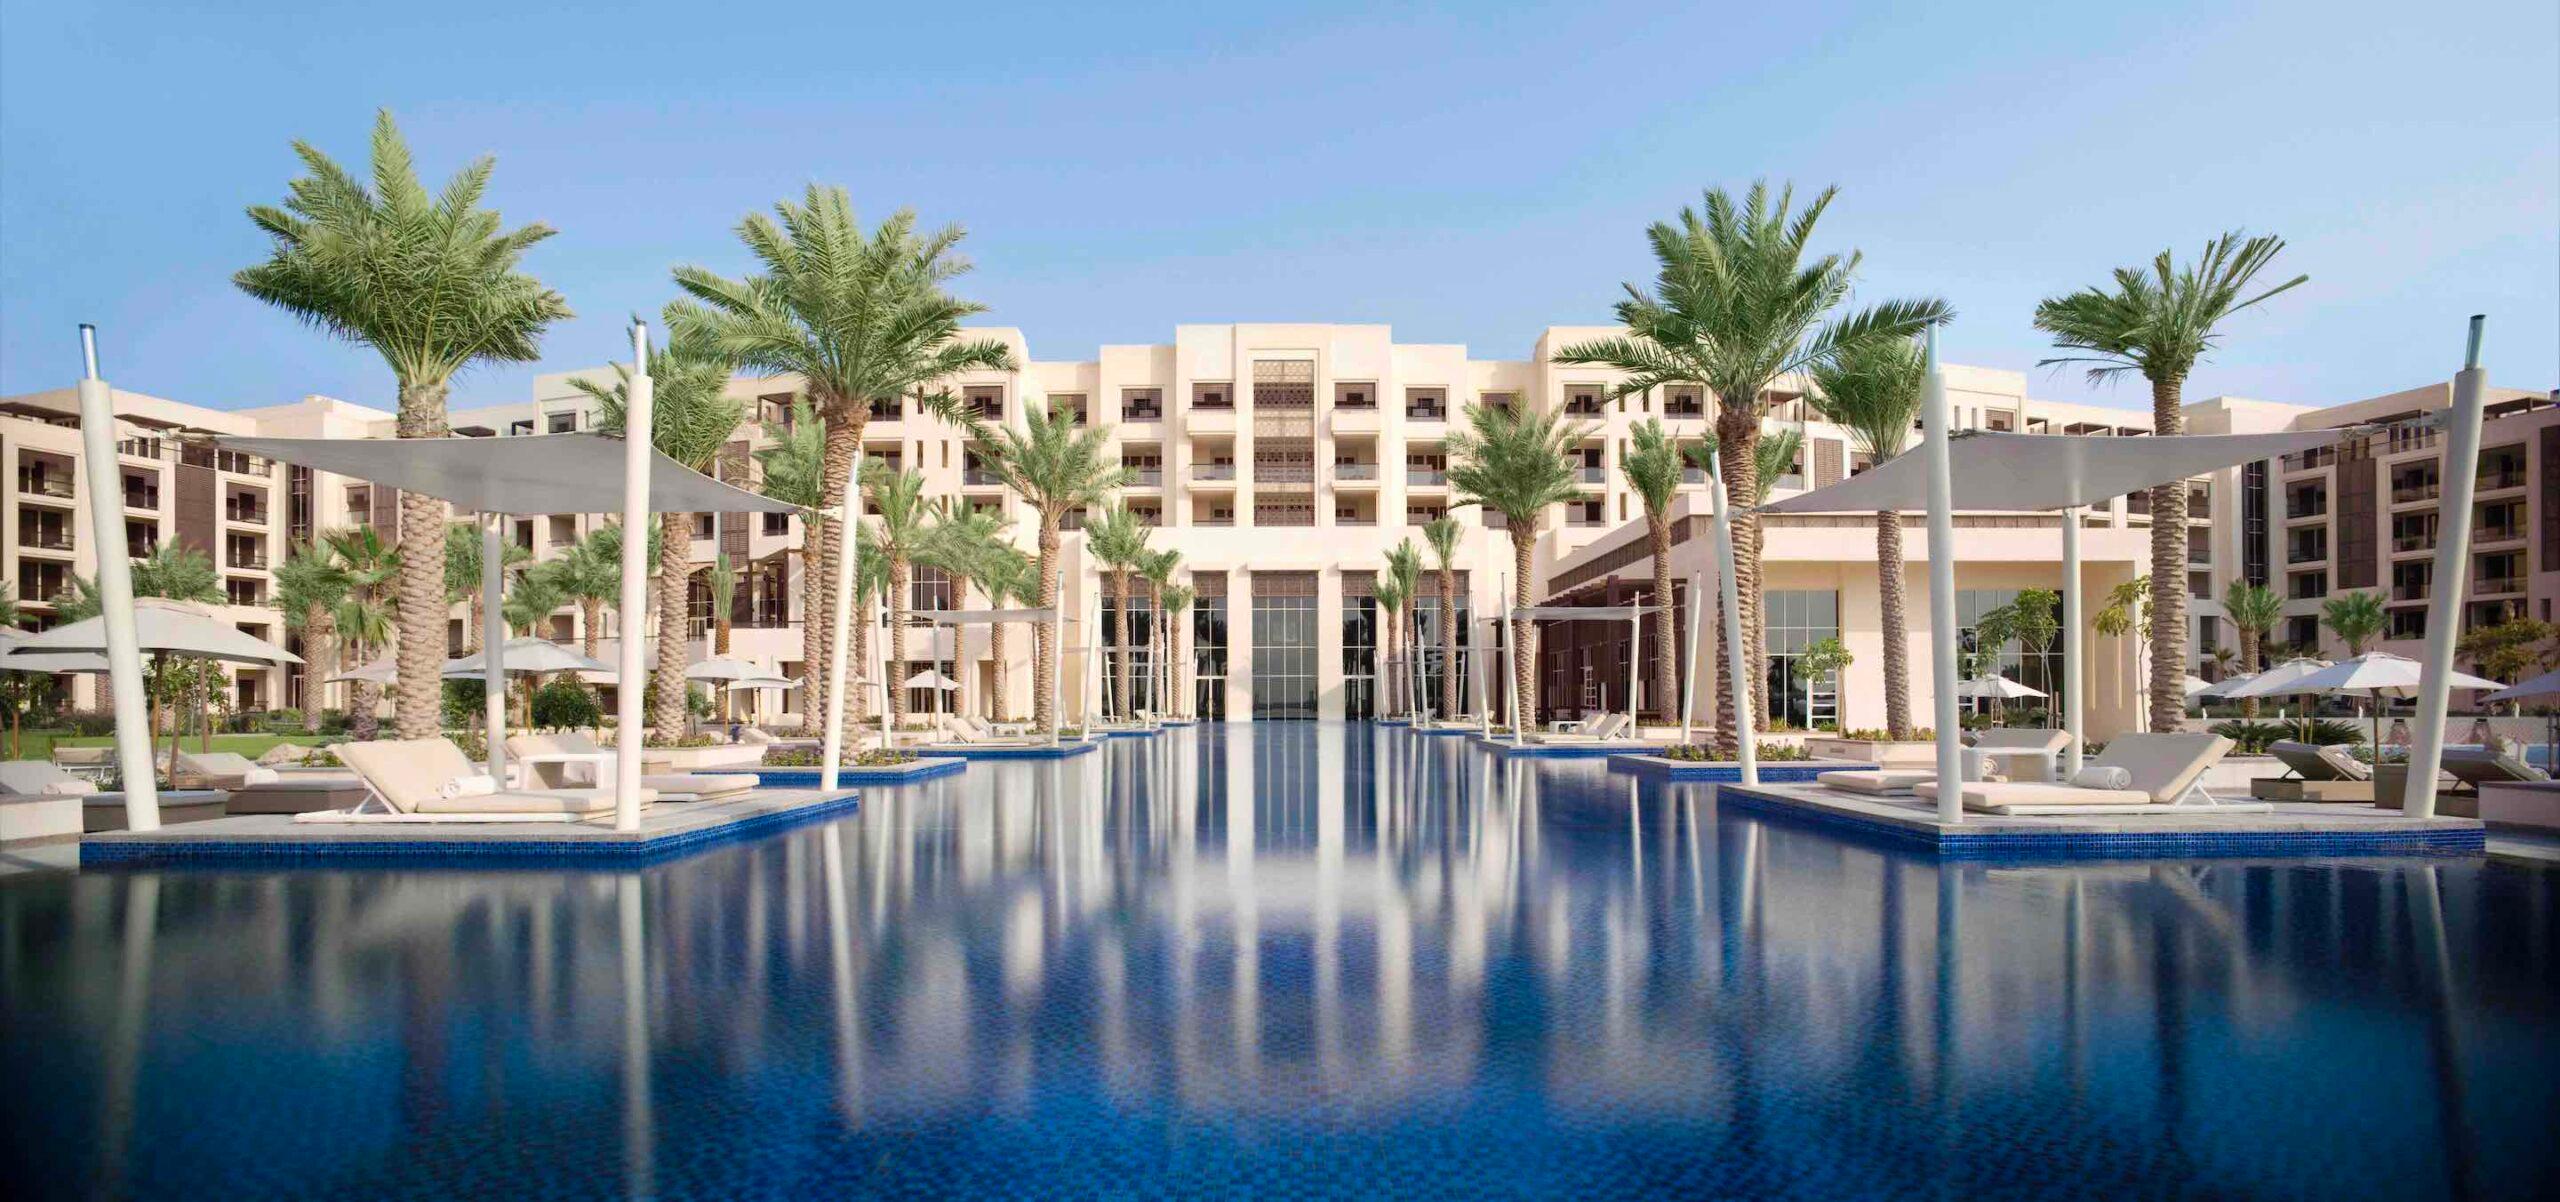 Staycation Spotlight: Park Hyatt Abu Dhabi Hotel & Villas